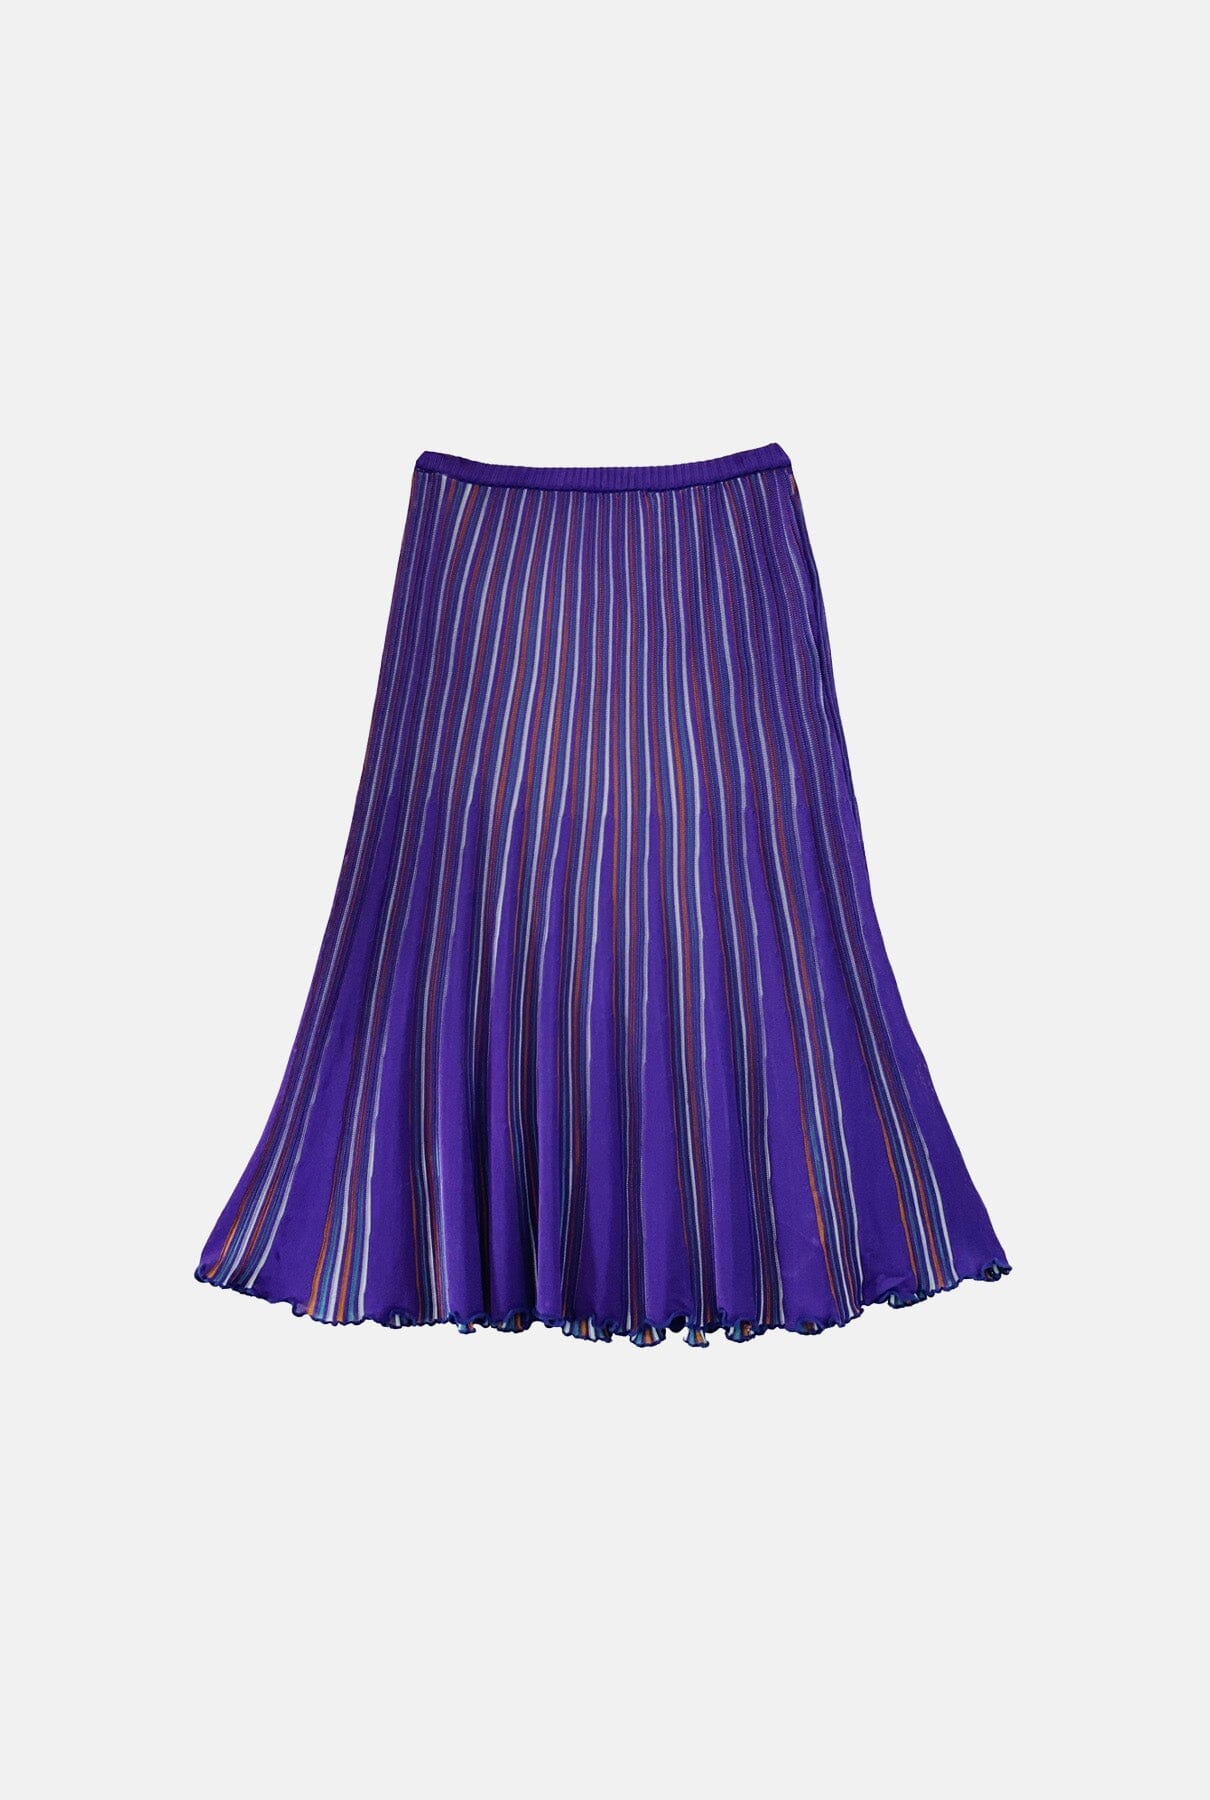 Sicilia Skirt Purple Skirts Carlota Cahis 